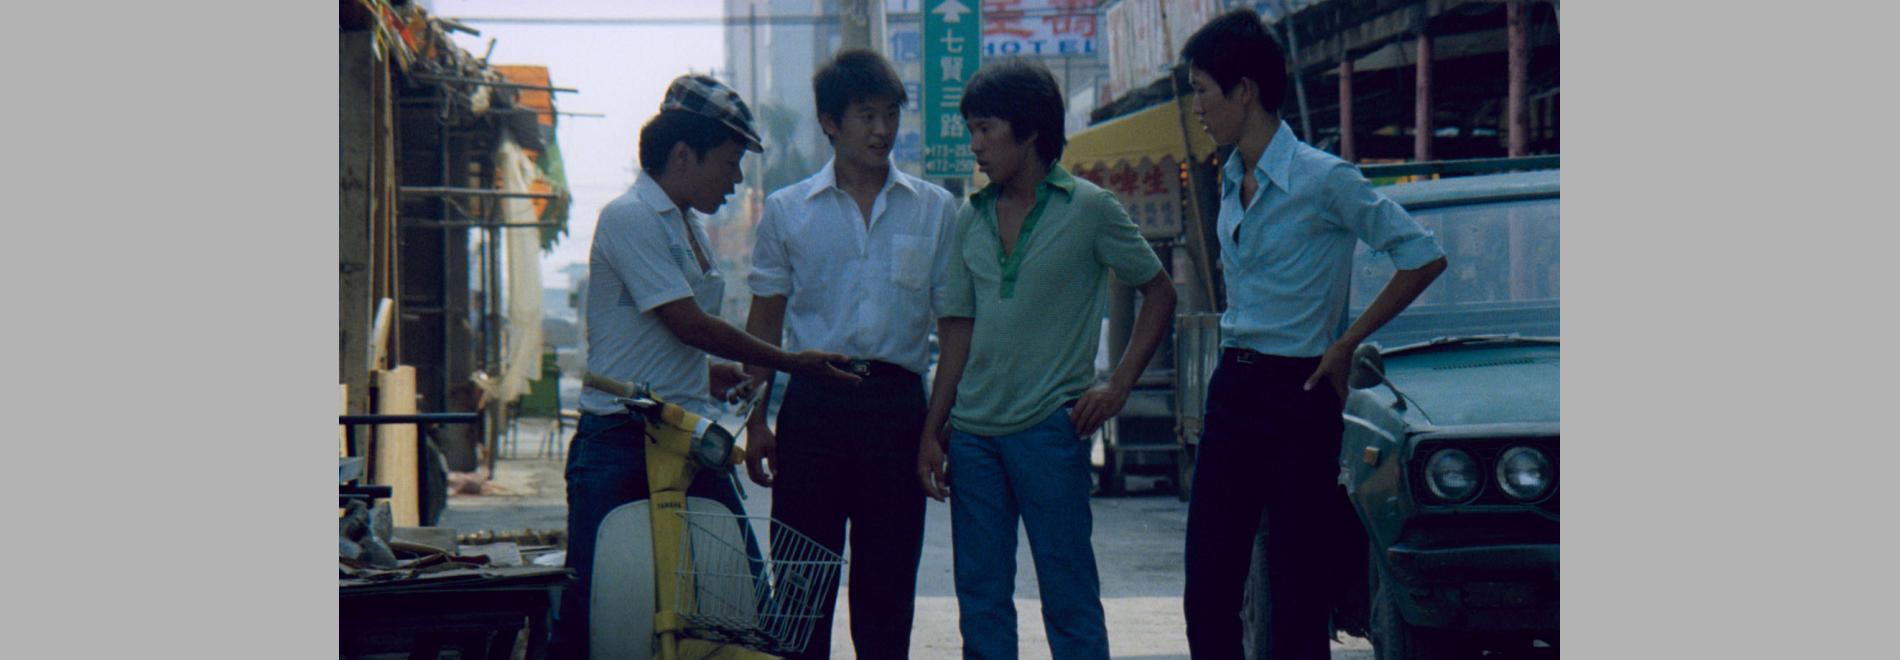 Feng gui lai de ren / Els nois de Fengkuei (Hou Hsiao-hsien, 1983)